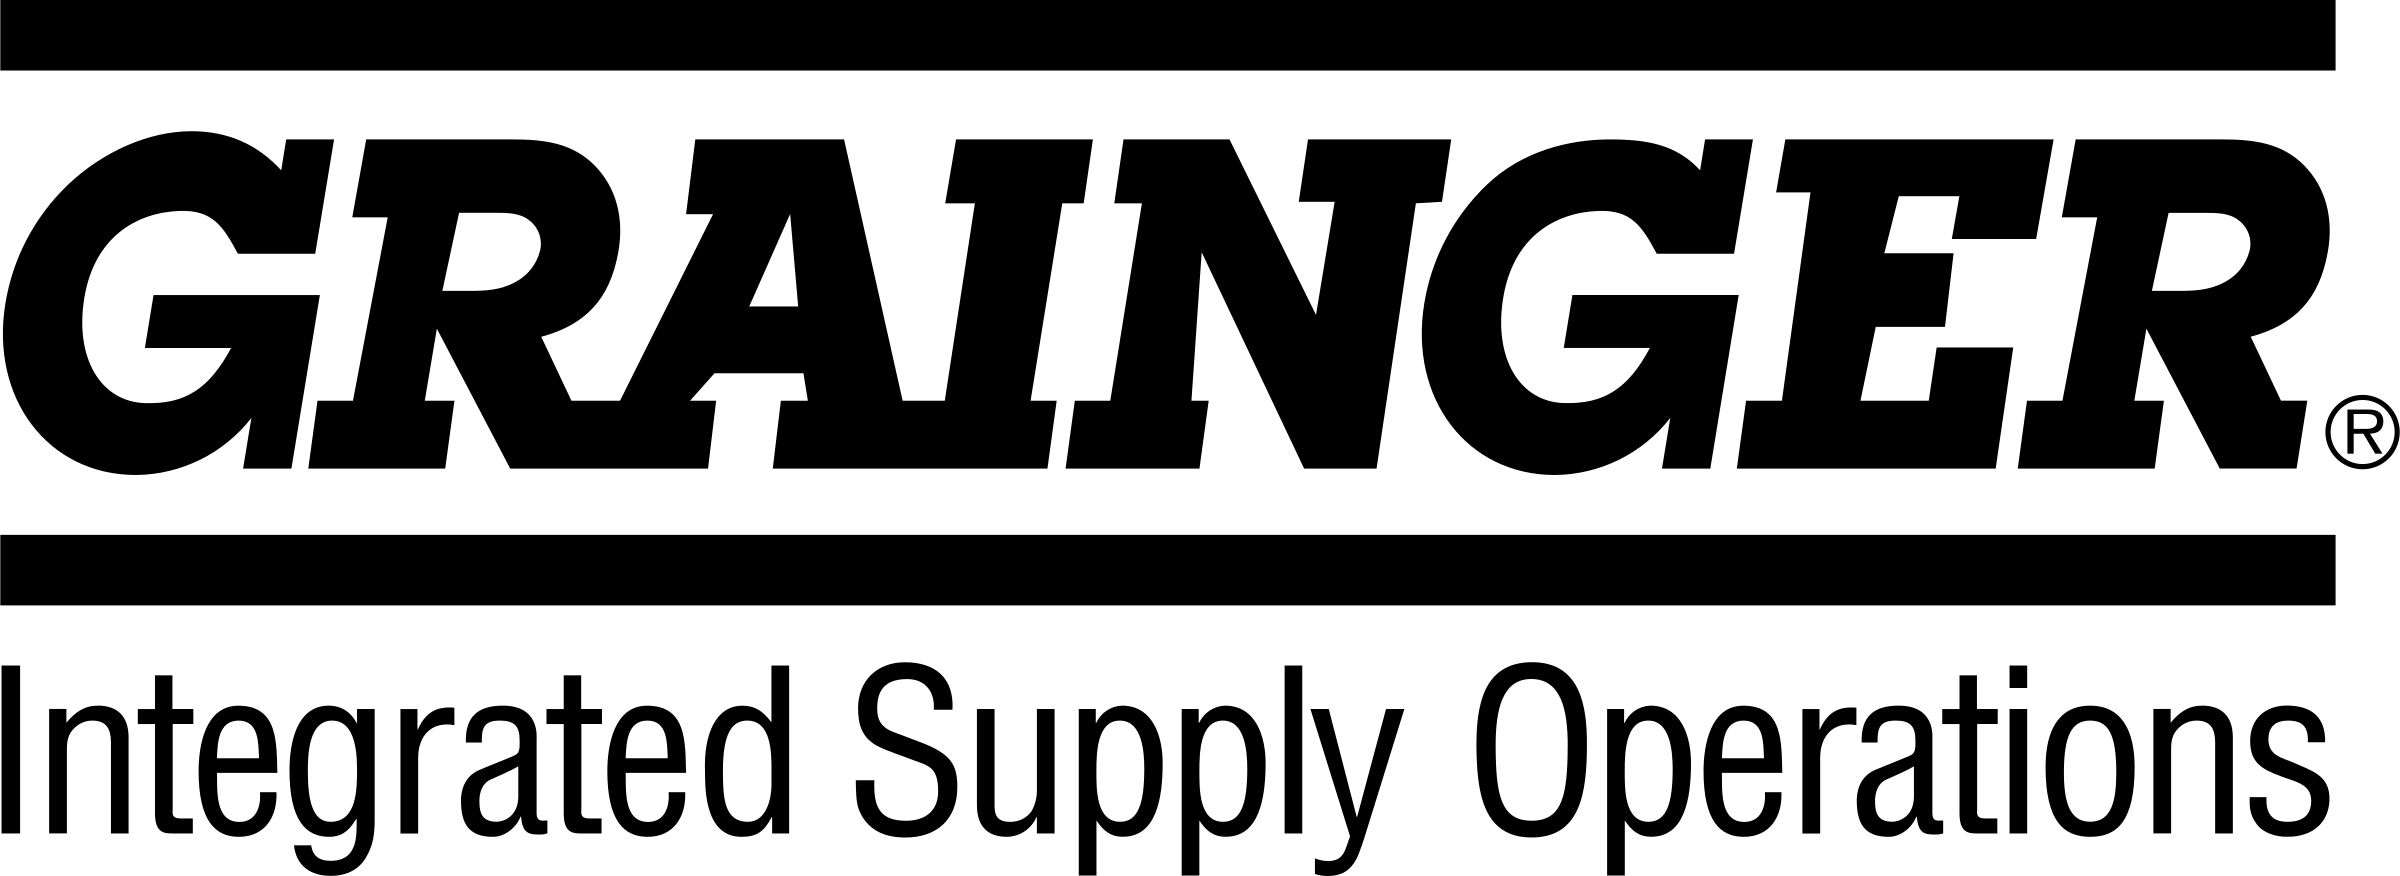 Grainger Logo - Grainger 2 Logo PNG Transparent & SVG Vector